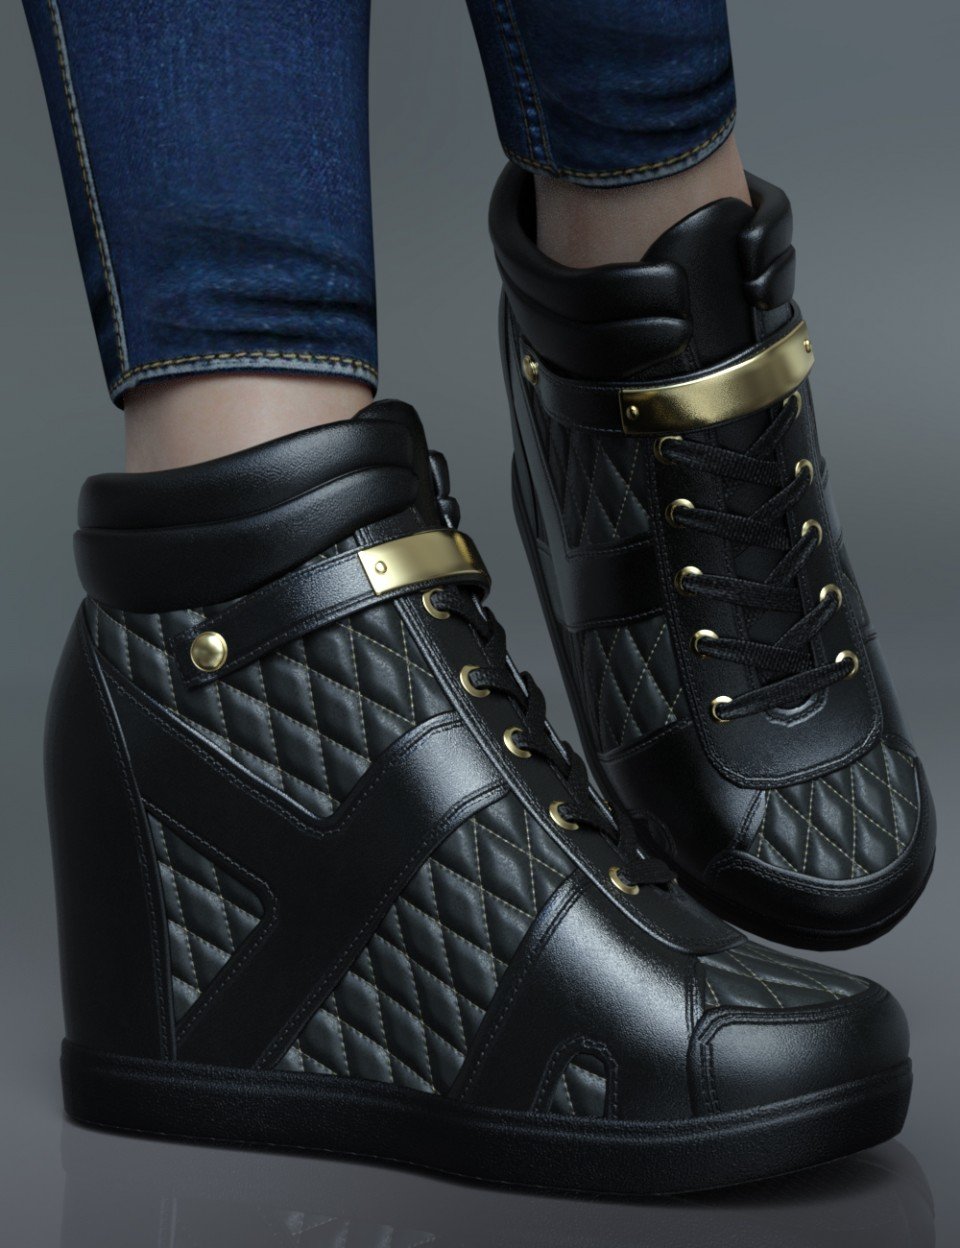 Wedged Sneakers for Genesis 8 Female(s)_DAZ3D下载站